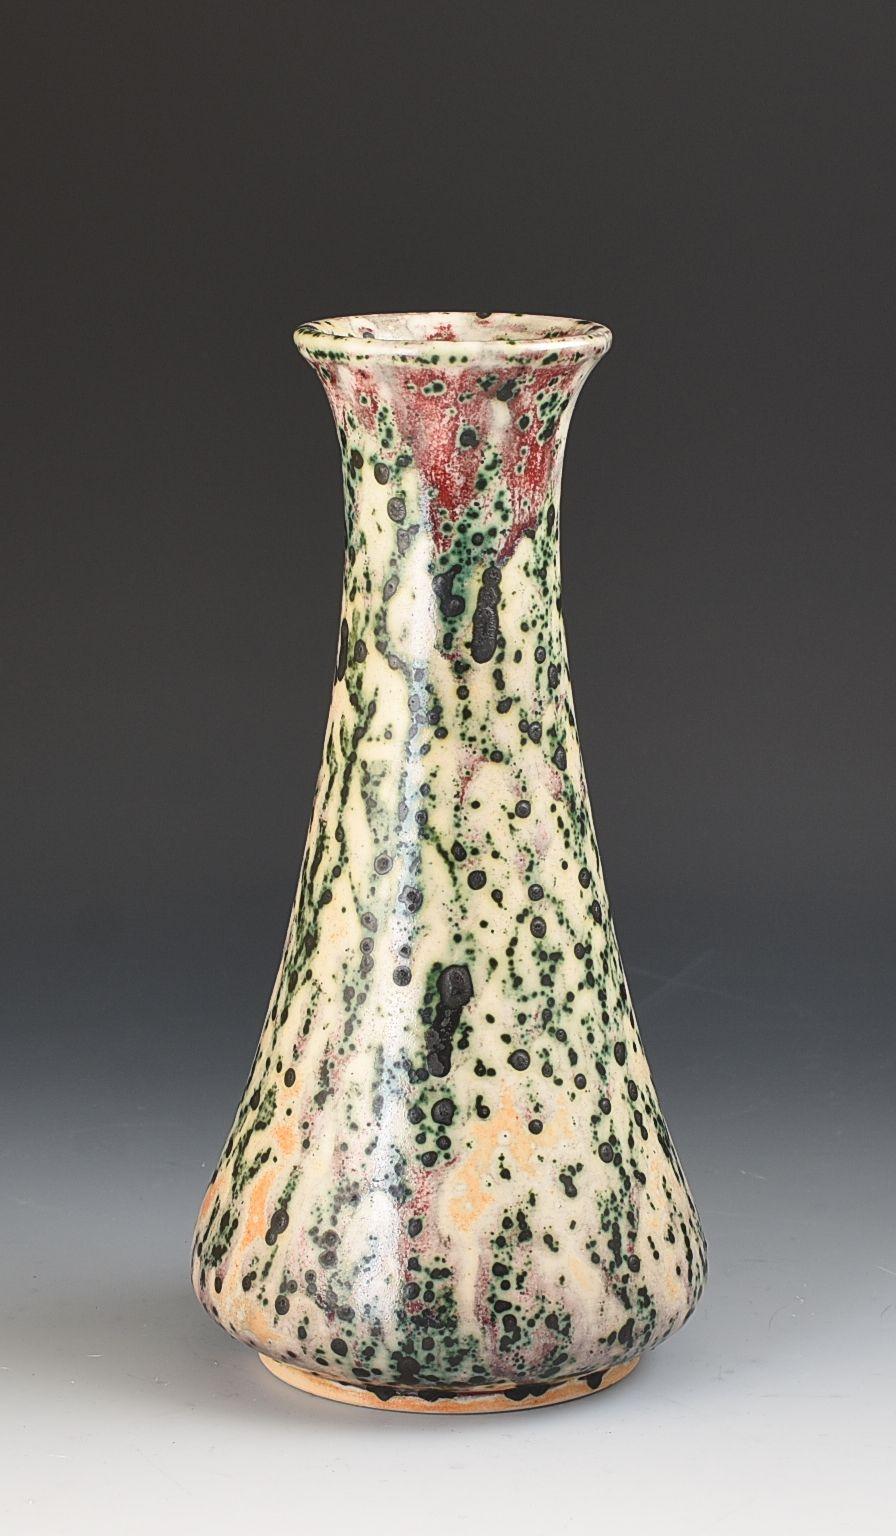 Eine prächtige gefleckte hochgebrannte Vase mit cremefarbenem Grund und violetten, grünen und ockerfarbenen Flecken. Gleichmäßig abgefeuert und rundherum hervorragend dargestellt. Die Vase misst 23,5 cm in der Gesamthöhe, ist GARANTIERT frei von